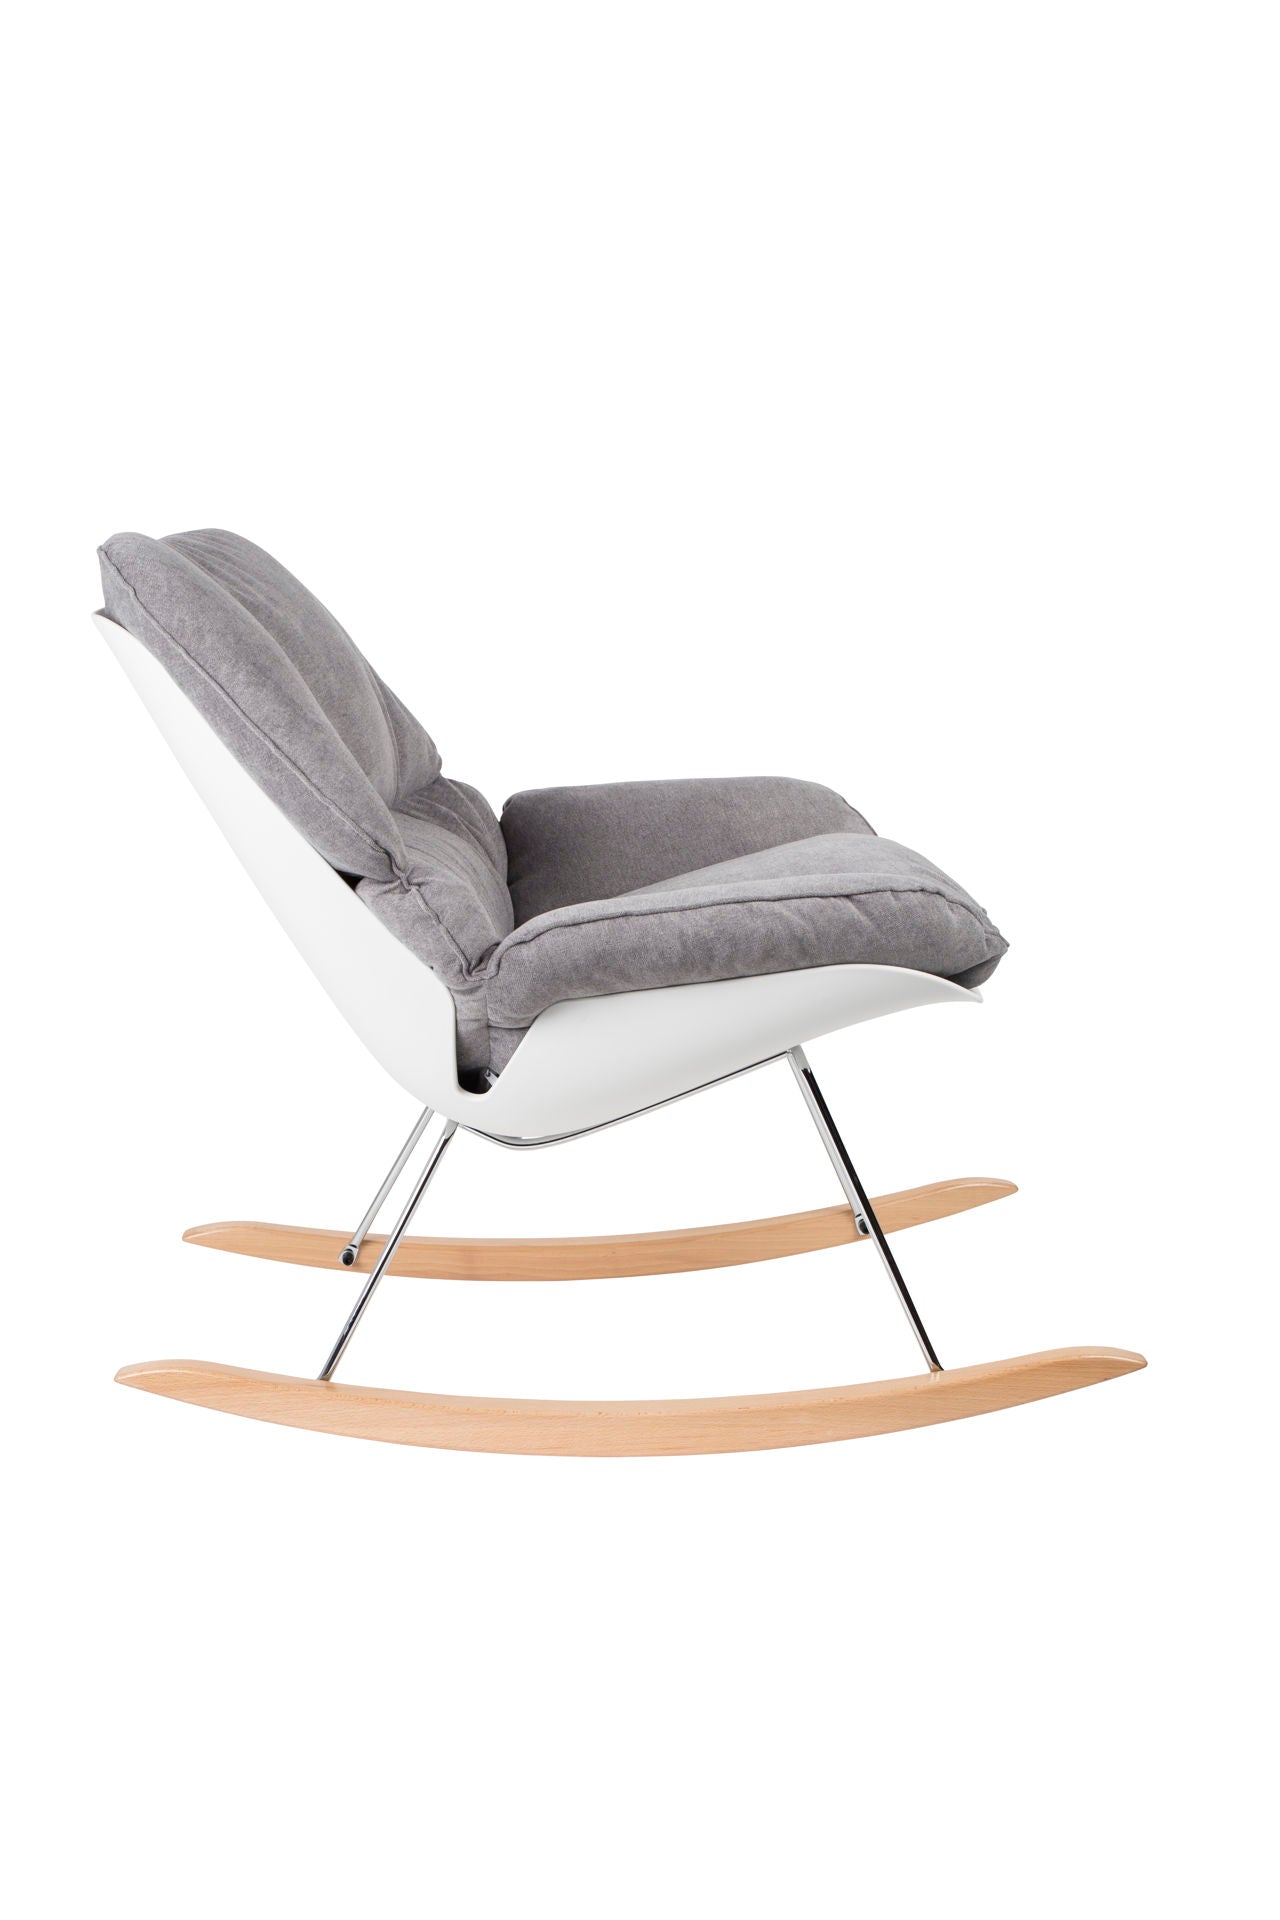 Nancy's East Renton Highlands Lounge Chair - Modern - Grijs, Wit, Naturel - Polypropyleen, Schuim, Hout - 98 cm x 76 cm x 84 cm